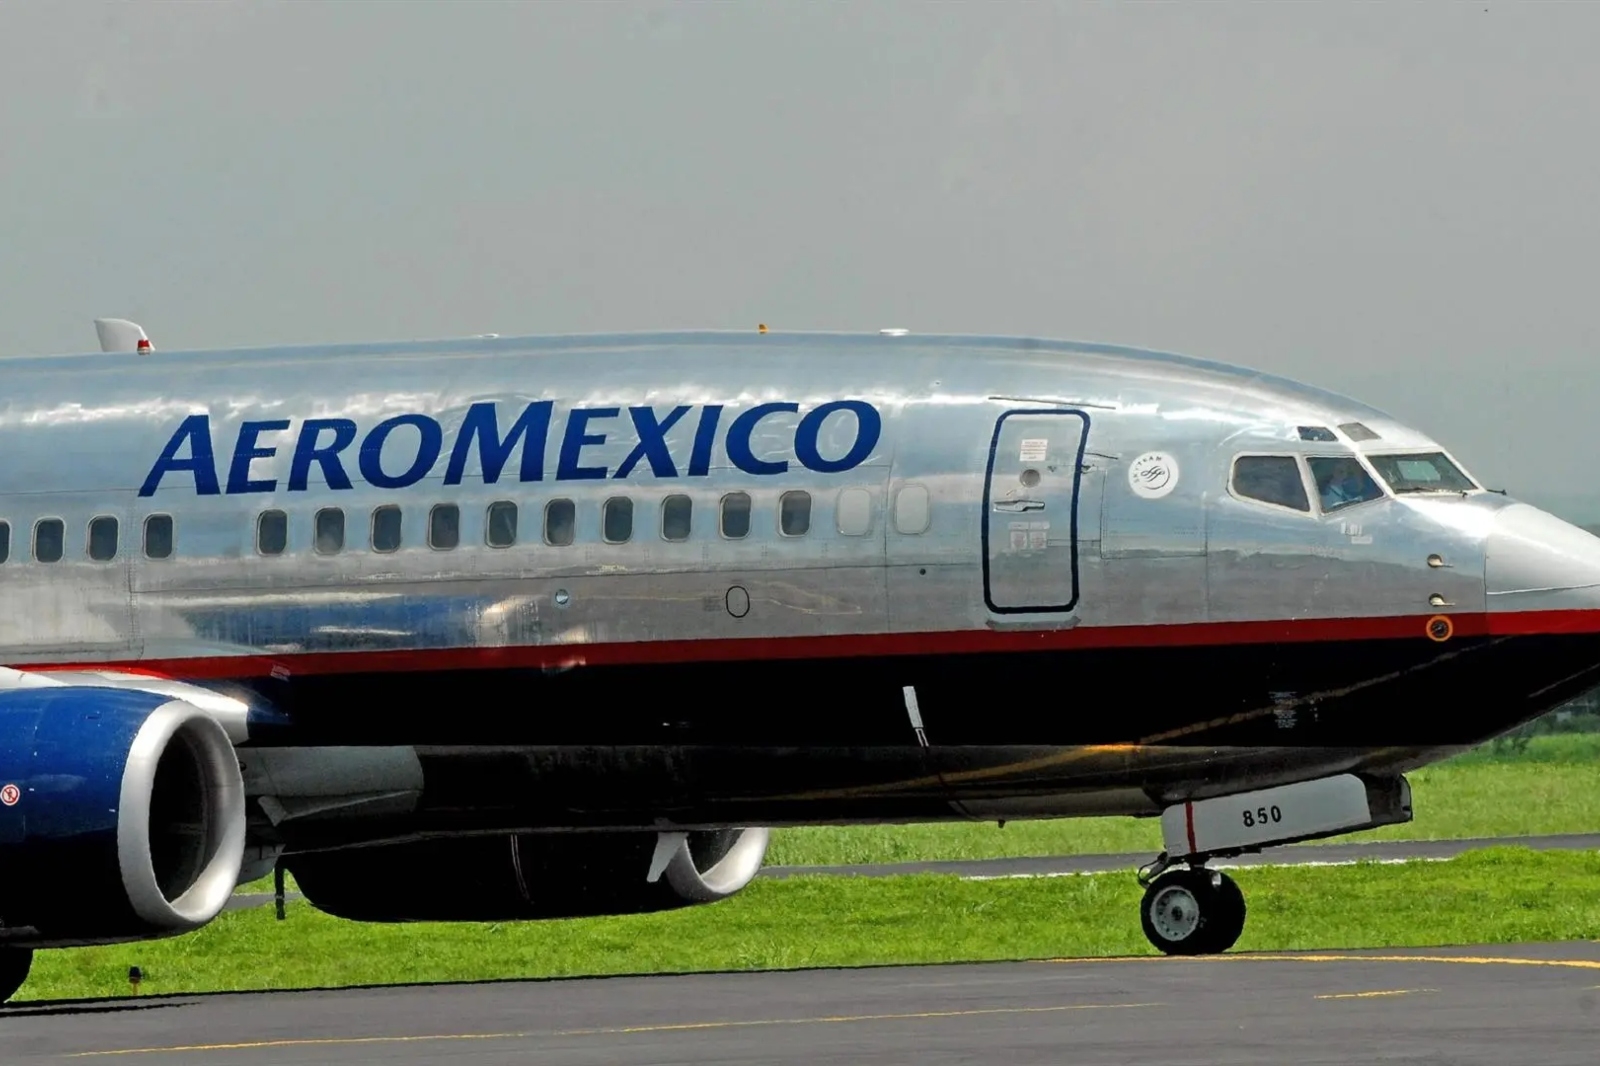 El sistema en el tablero del avión le marcó al piloto que el avión de Aeroméxico presentaba fallas, por lo que decidieron retornar a Mérida